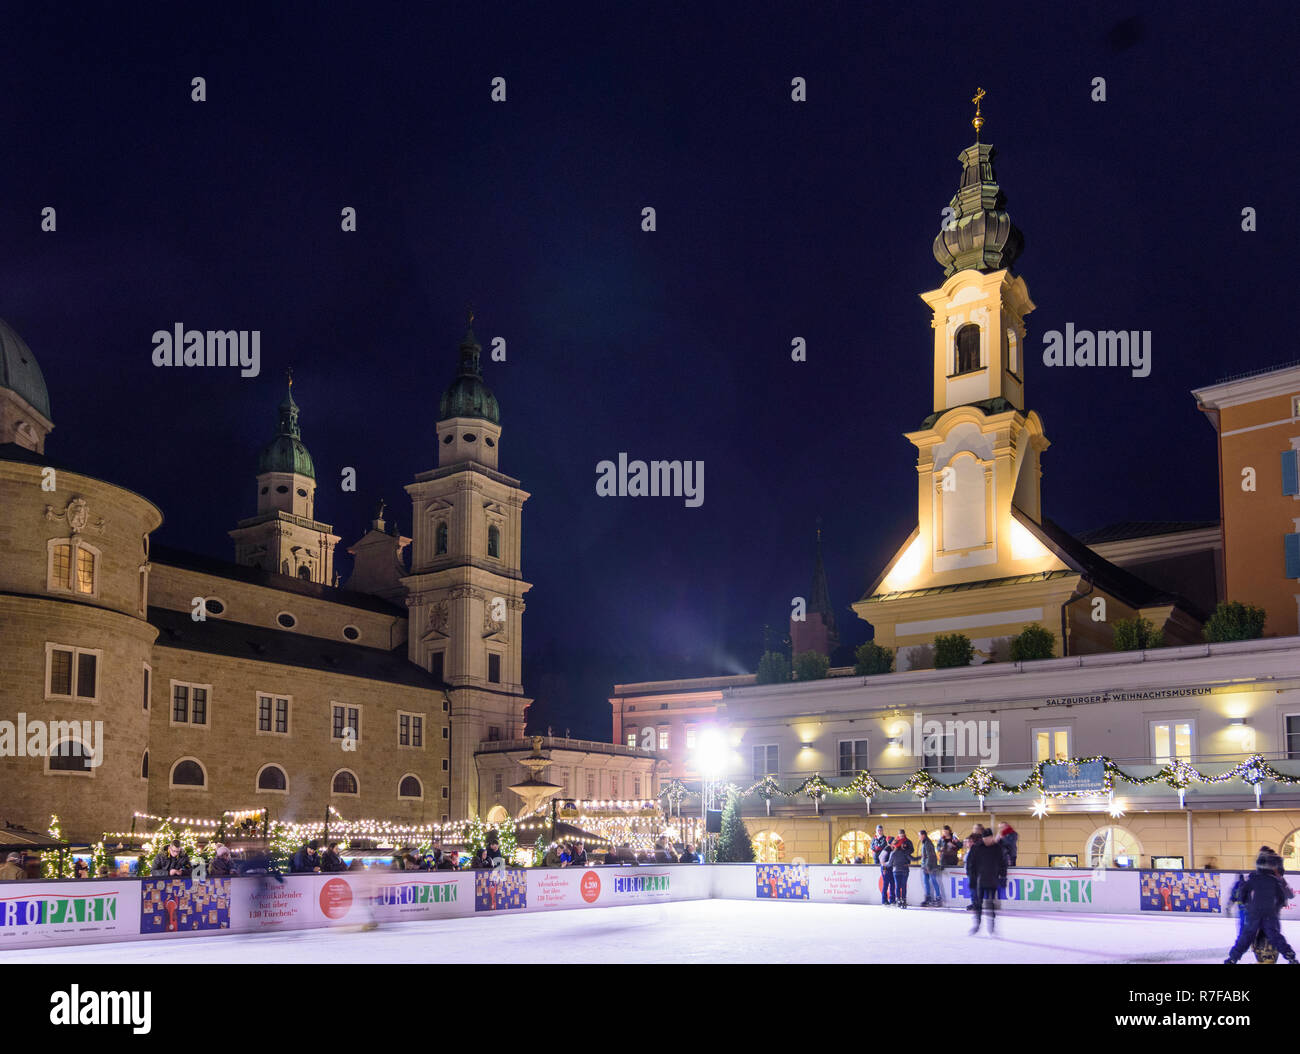 Salzburg: Eisbahn neben Weihnachtsmarkt Christkindlmarkt (christkindl-markt) bei Square Mozartplatz, im Dom (Kathedrale) und Franziskanerkirche Stockfoto